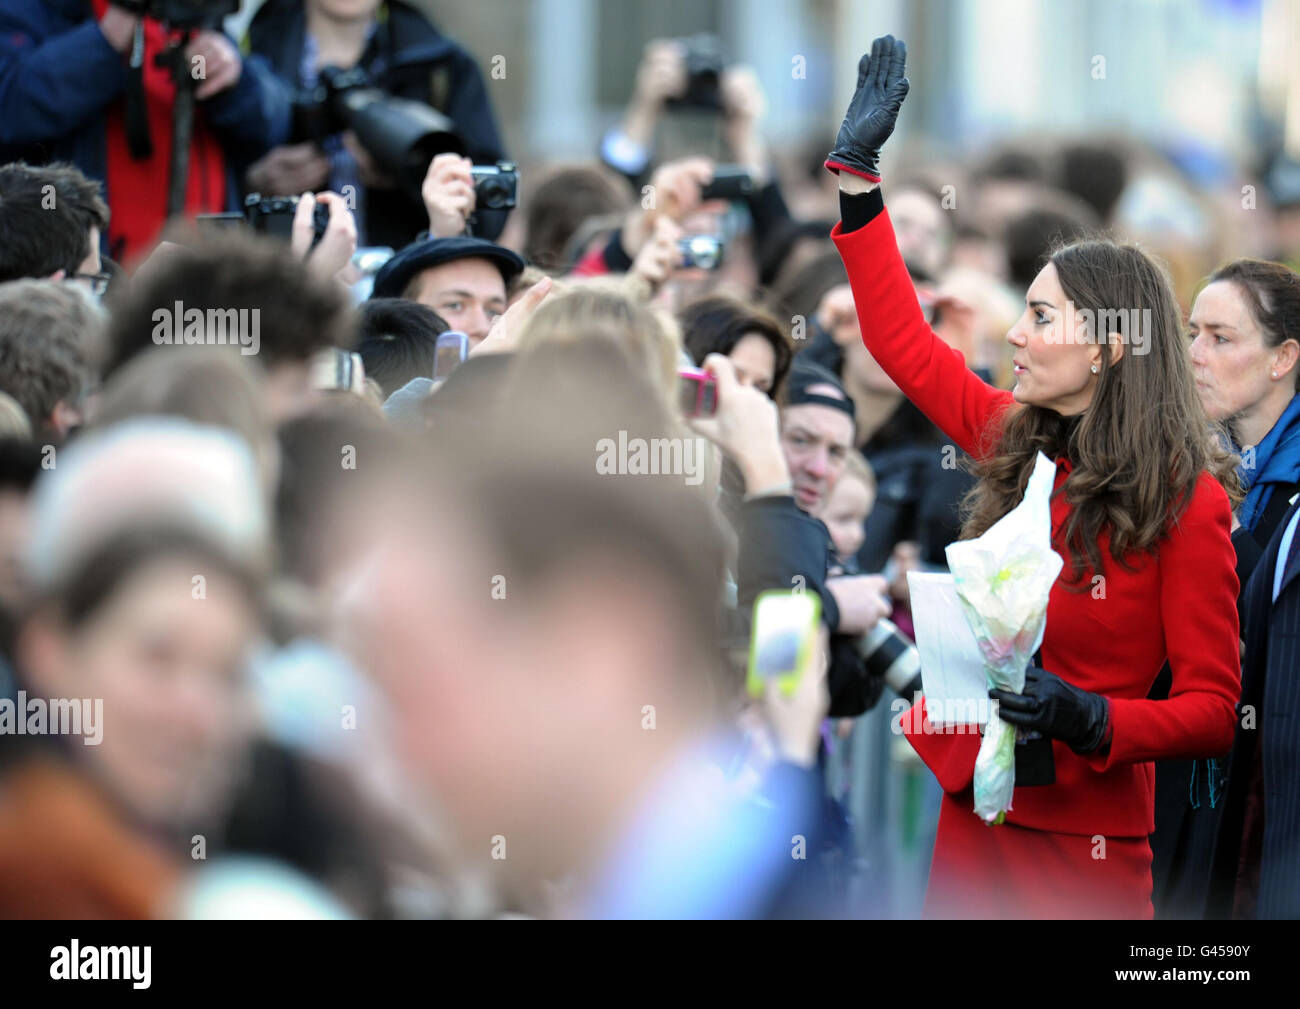 Die Verlobte von Prinz William Kate Middleton winkt bei einem Besuch in St. Andrews in Schottland, wo sie und Prinz William sich zum ersten Mal trafen, zu den Publikumsbesuchern. Stockfoto